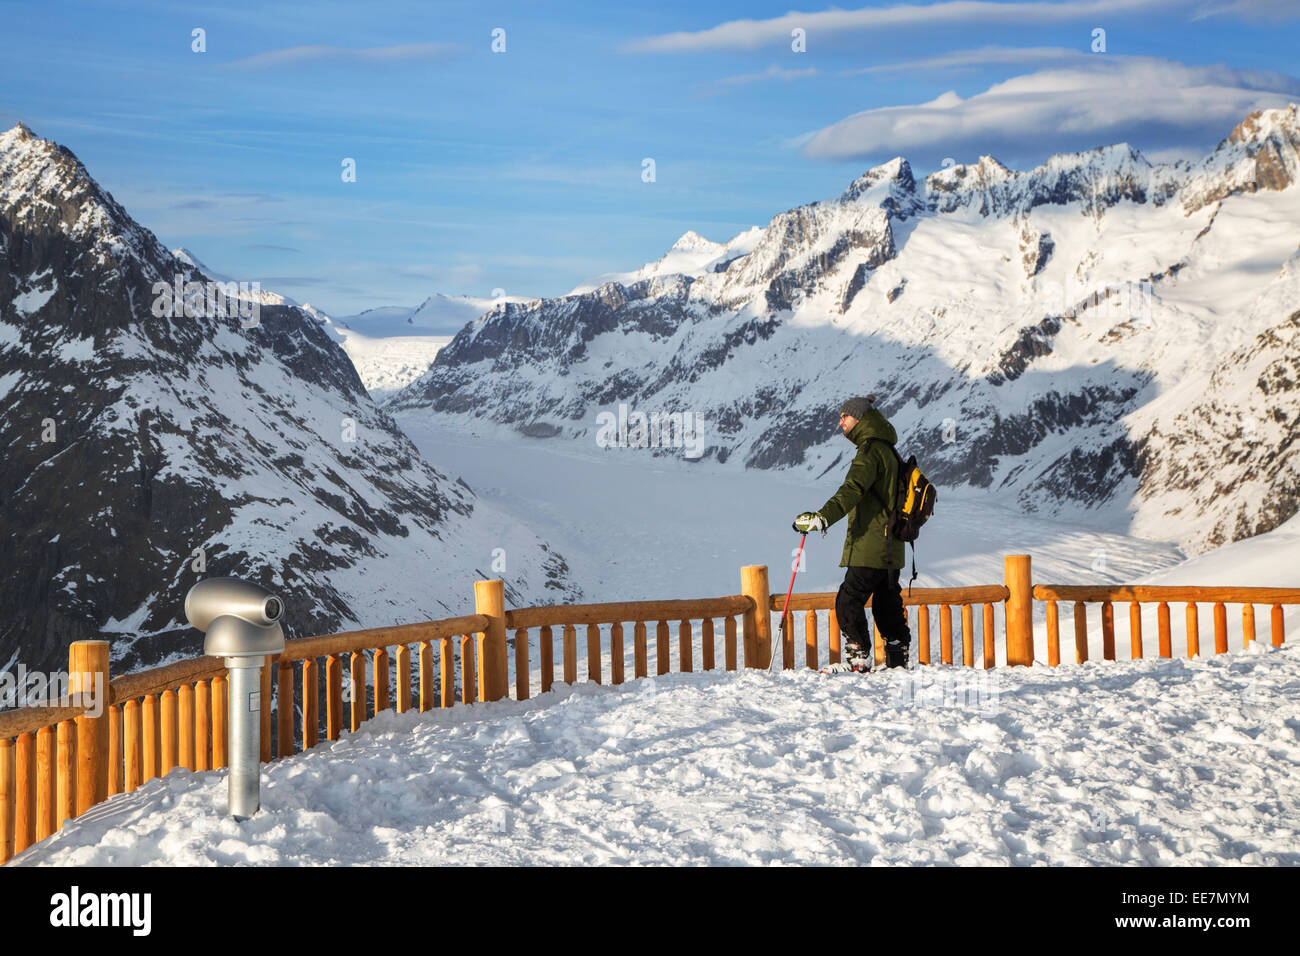 Touristen in den Schnee, der Blick auf die Berge im Winter rund um den Schweizer Aletschgletscher, größte in den Alpen, Schweiz Stockfoto